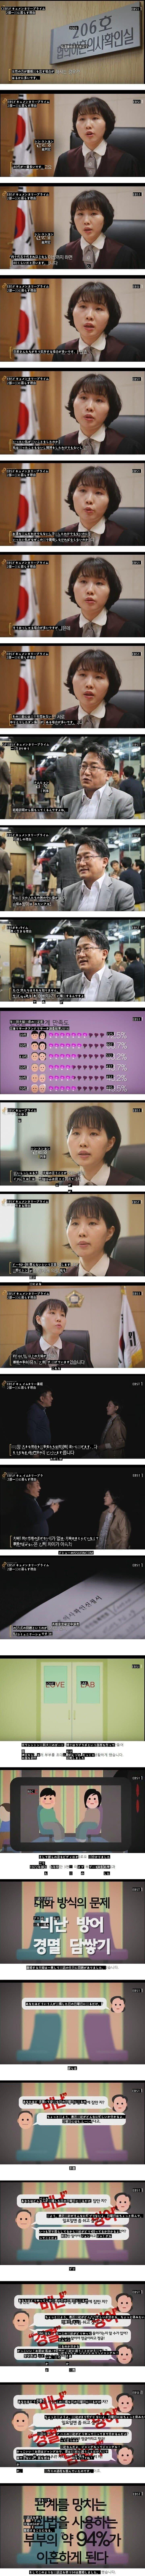 大韓民国夫婦が離婚する最大の原因jpg